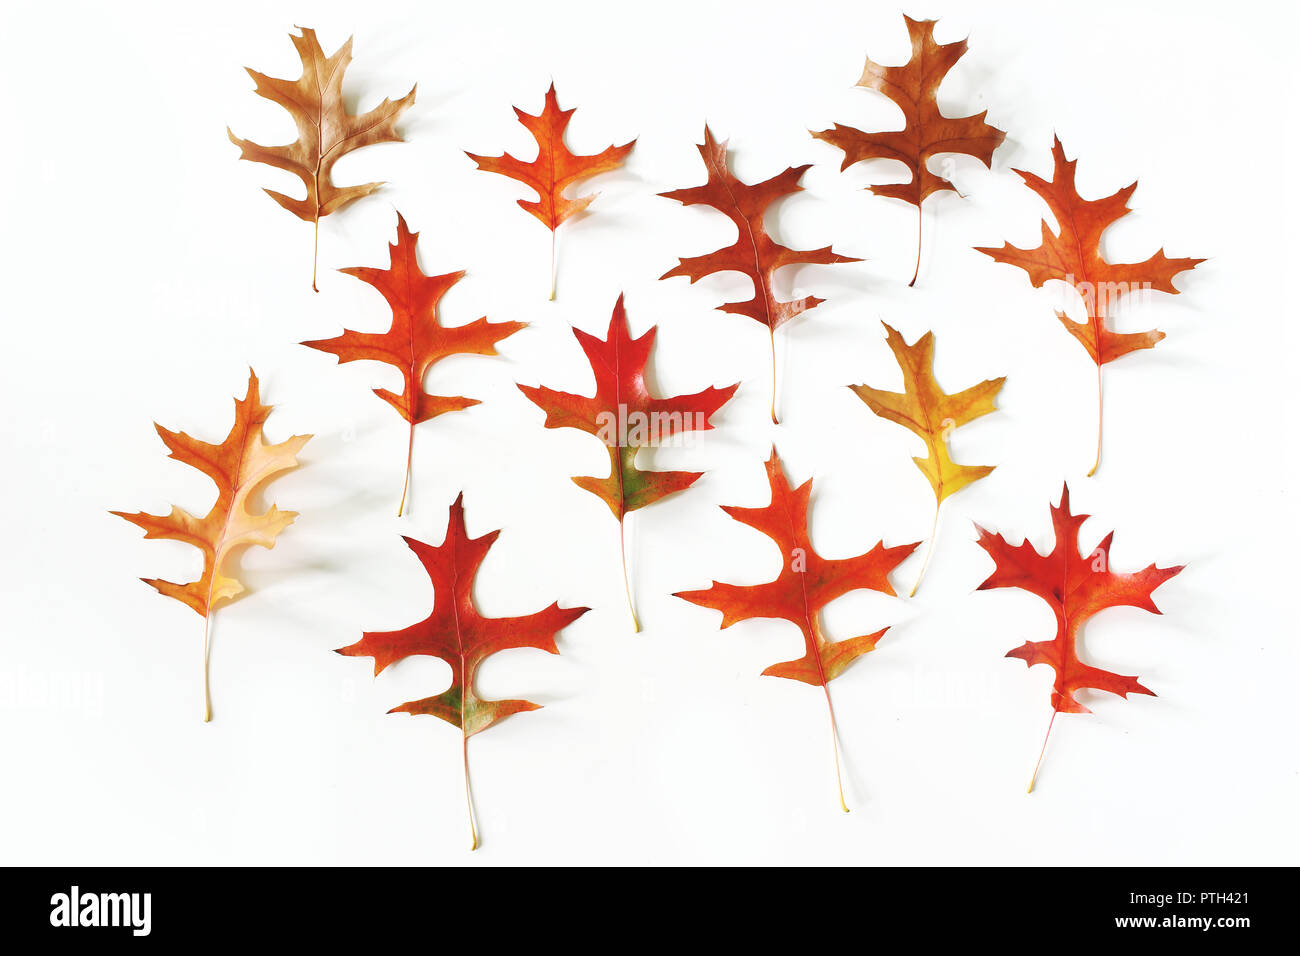 Bunte Eichenblätter Muster auf weißem Hintergrund. Moderne Herbst gestaltete Komposition. Herbst Design, Thanksgiving Konzept. Flach, Ansicht von oben. Stockfoto